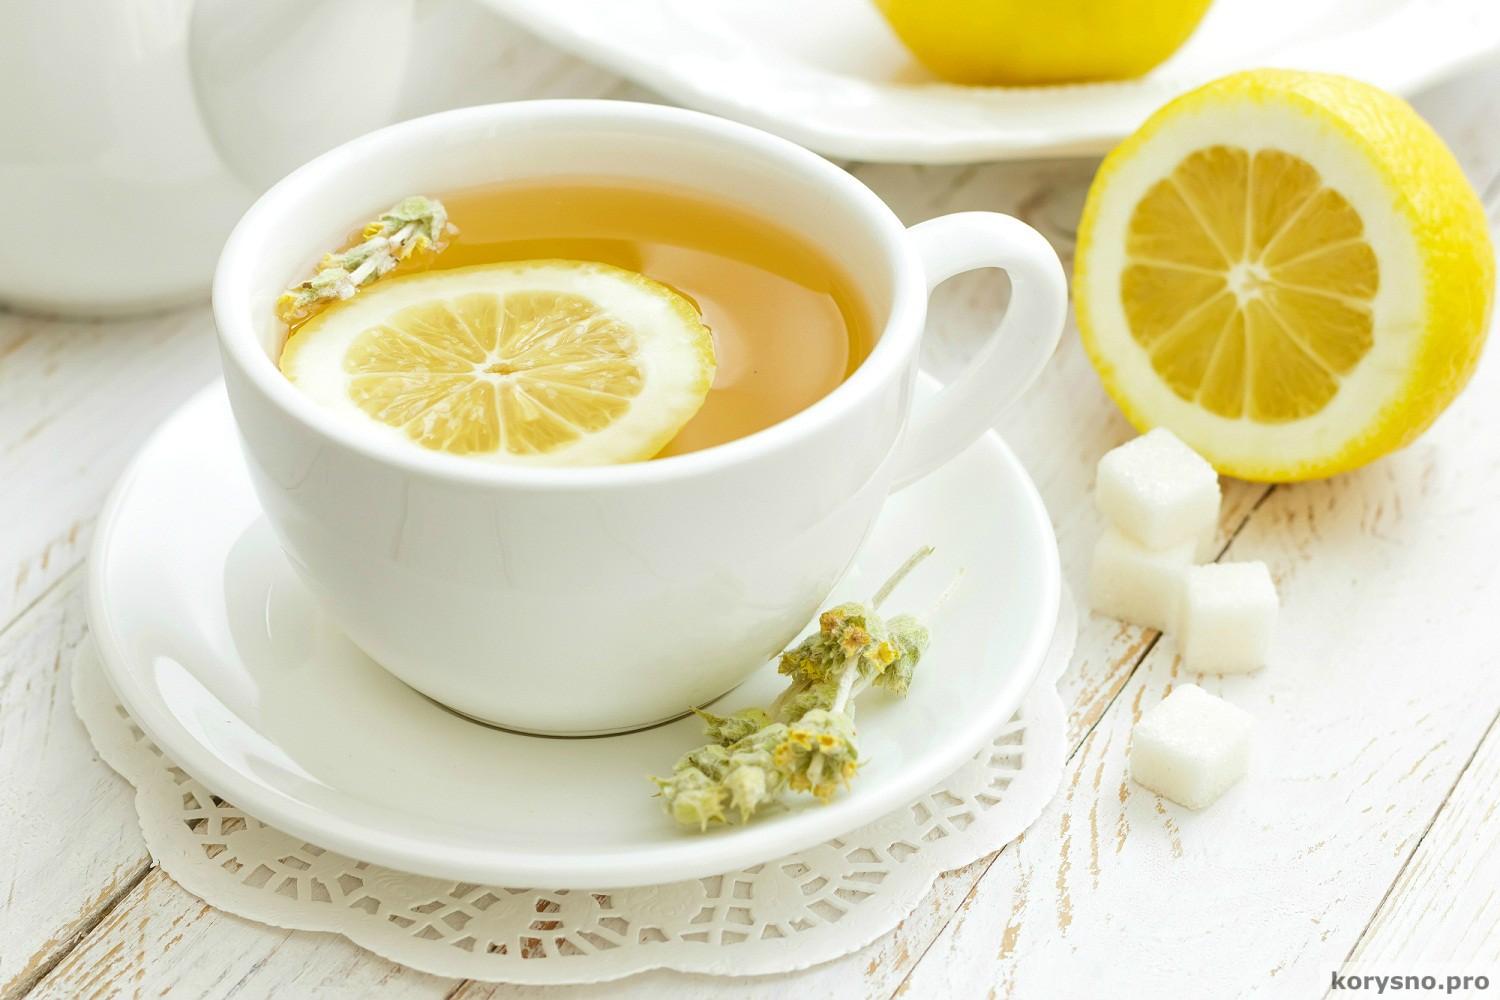 Почему лимон осветляет чай?